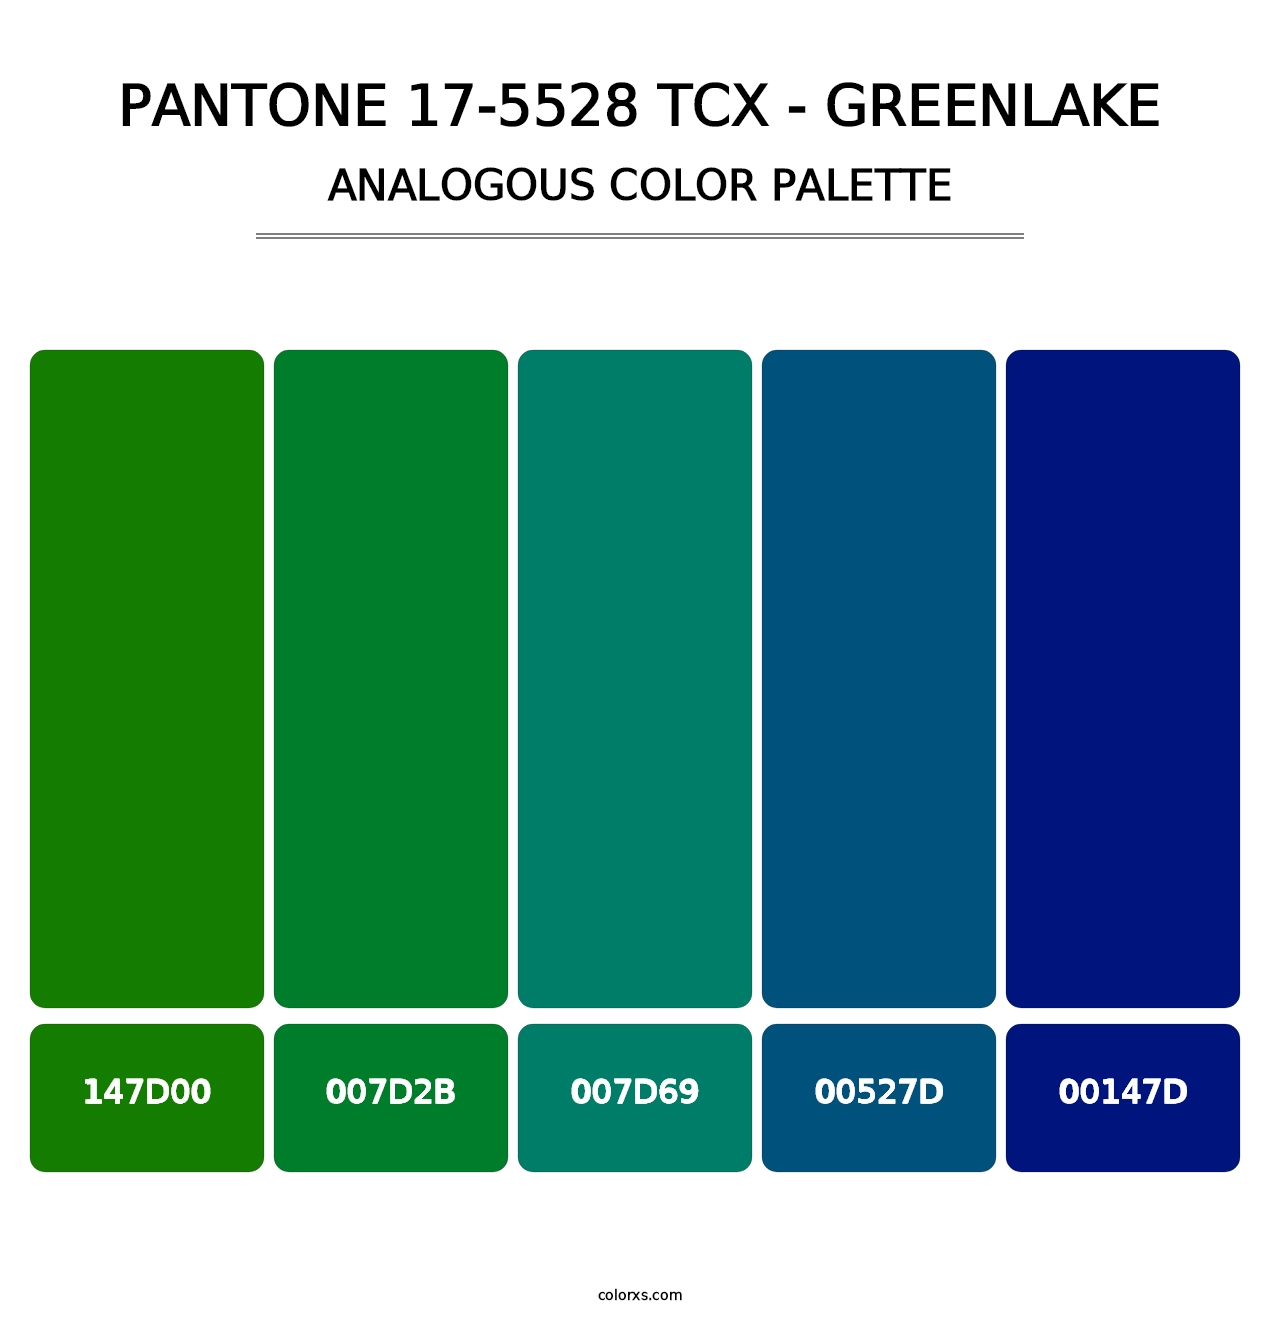 PANTONE 17-5528 TCX - Greenlake - Analogous Color Palette